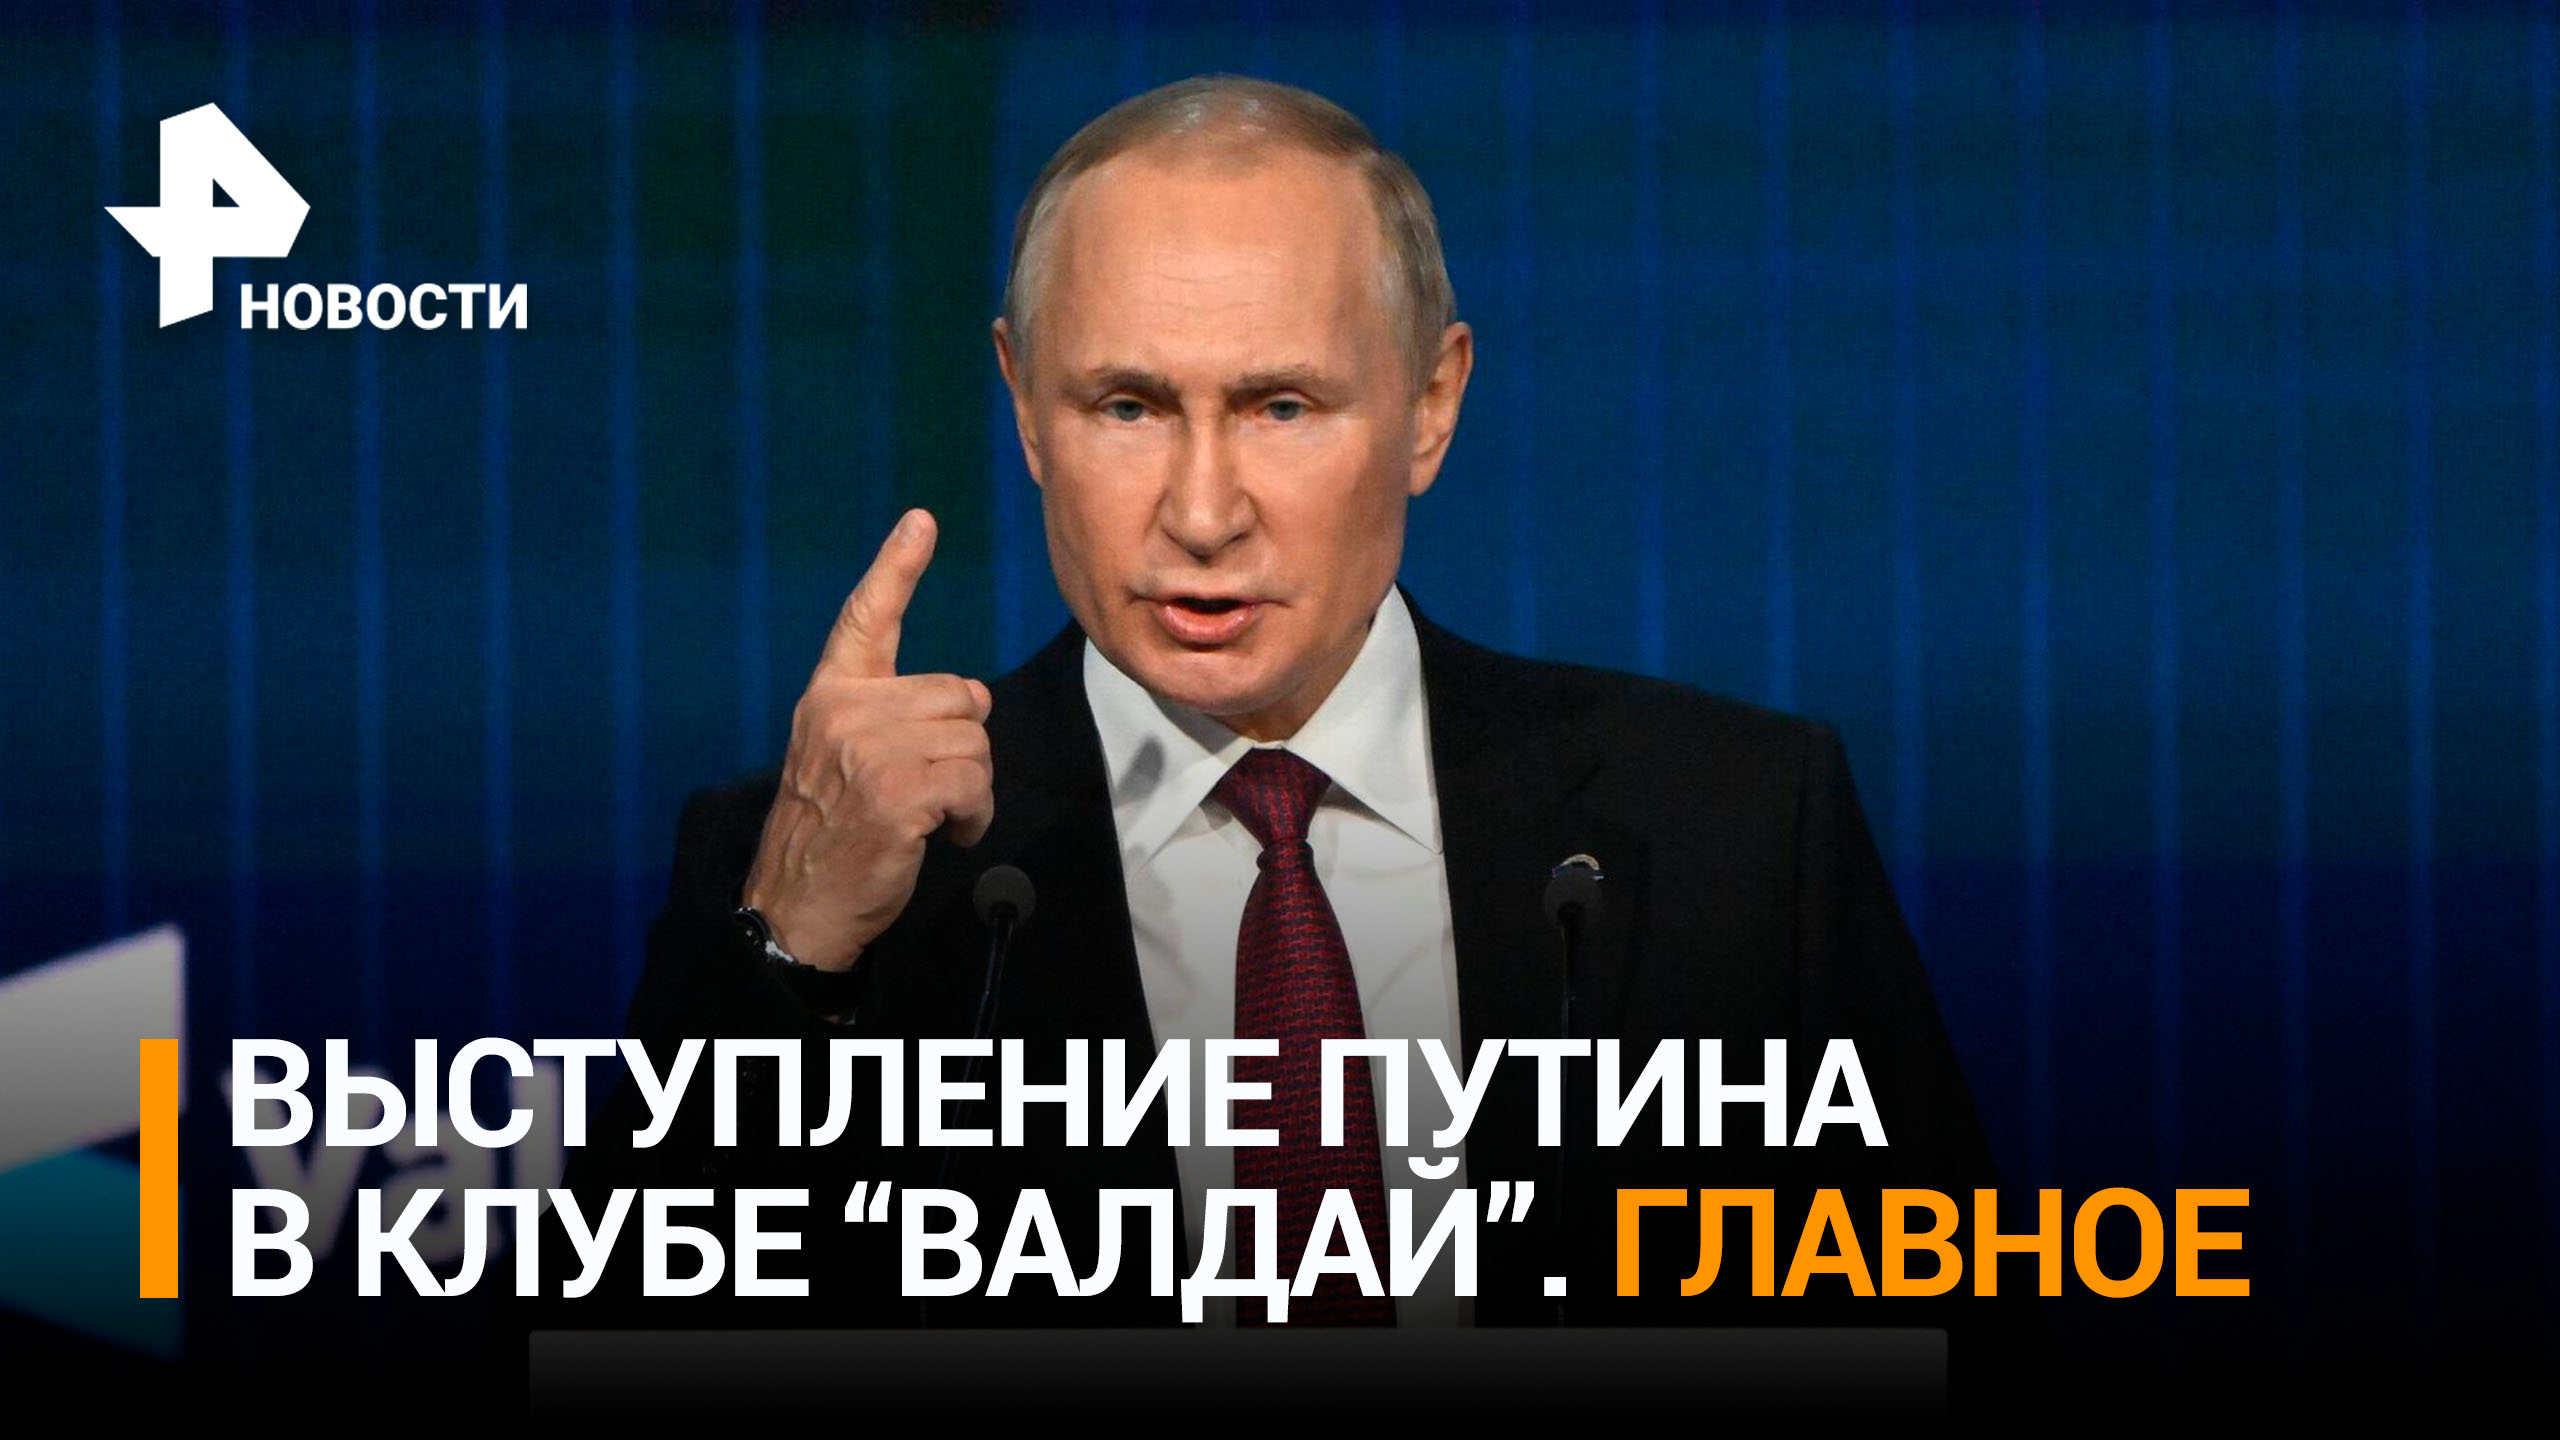 Путин: величие России сегодня заключается в укреплении ее суверенитета. Главные заявления "Валдая"